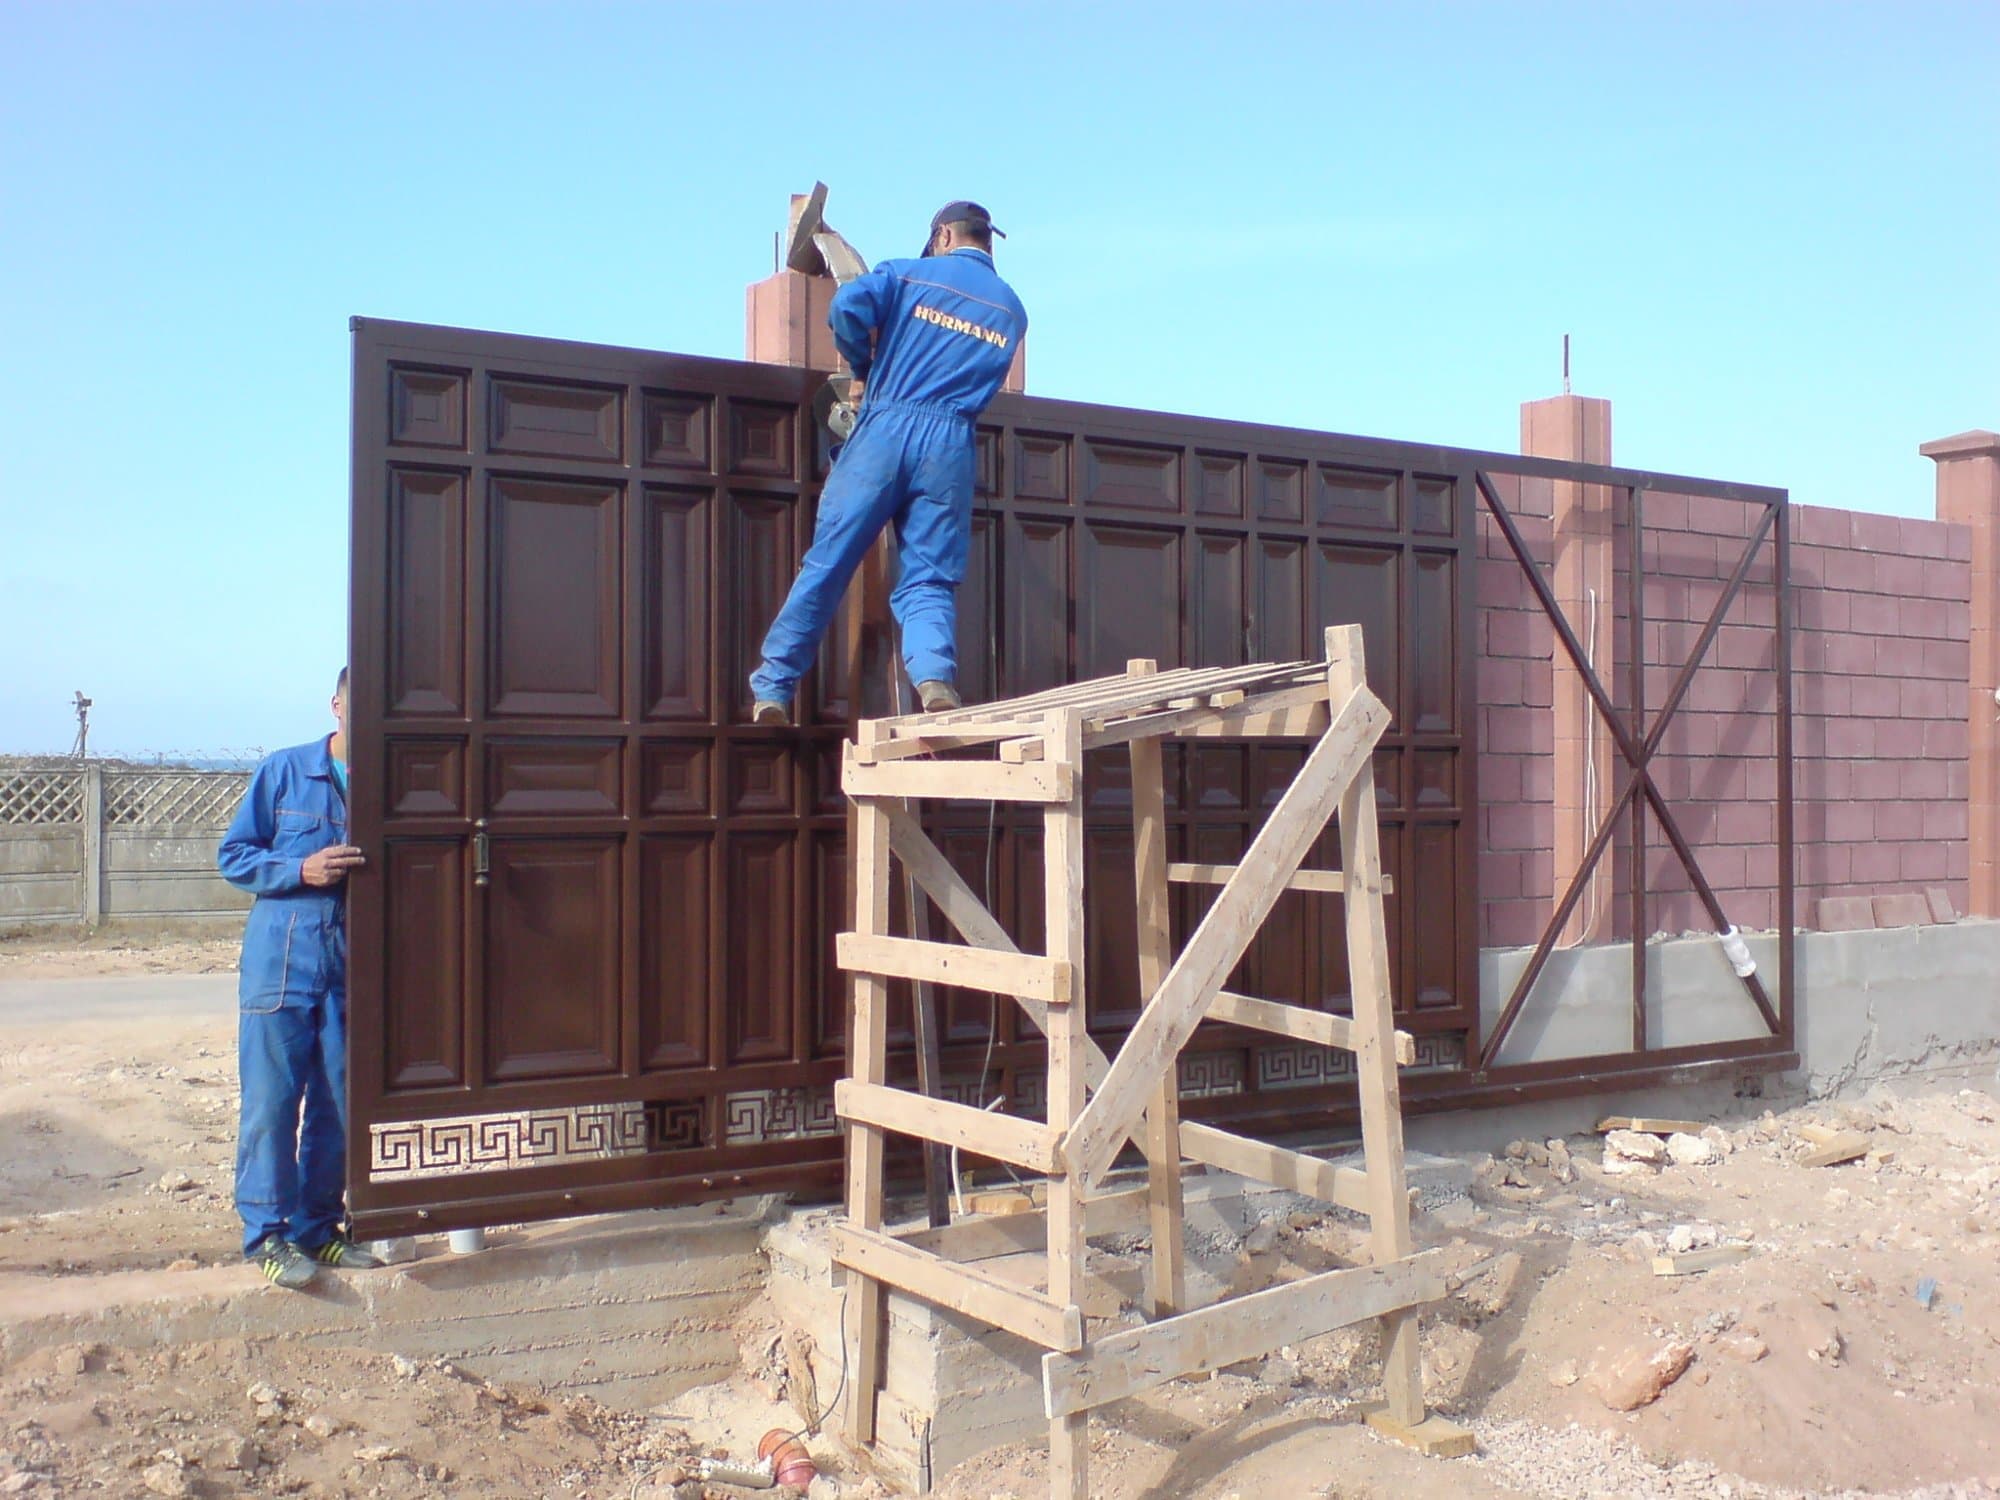 Заказать монтаж въездных ворот в Крыму командой профессионалов с опытом работы уже более 9 лет. Качественная, профессиональная, аккуратная и быстрая установка, независимо от степени сложности объекта. Цены Вас приятно удивят.